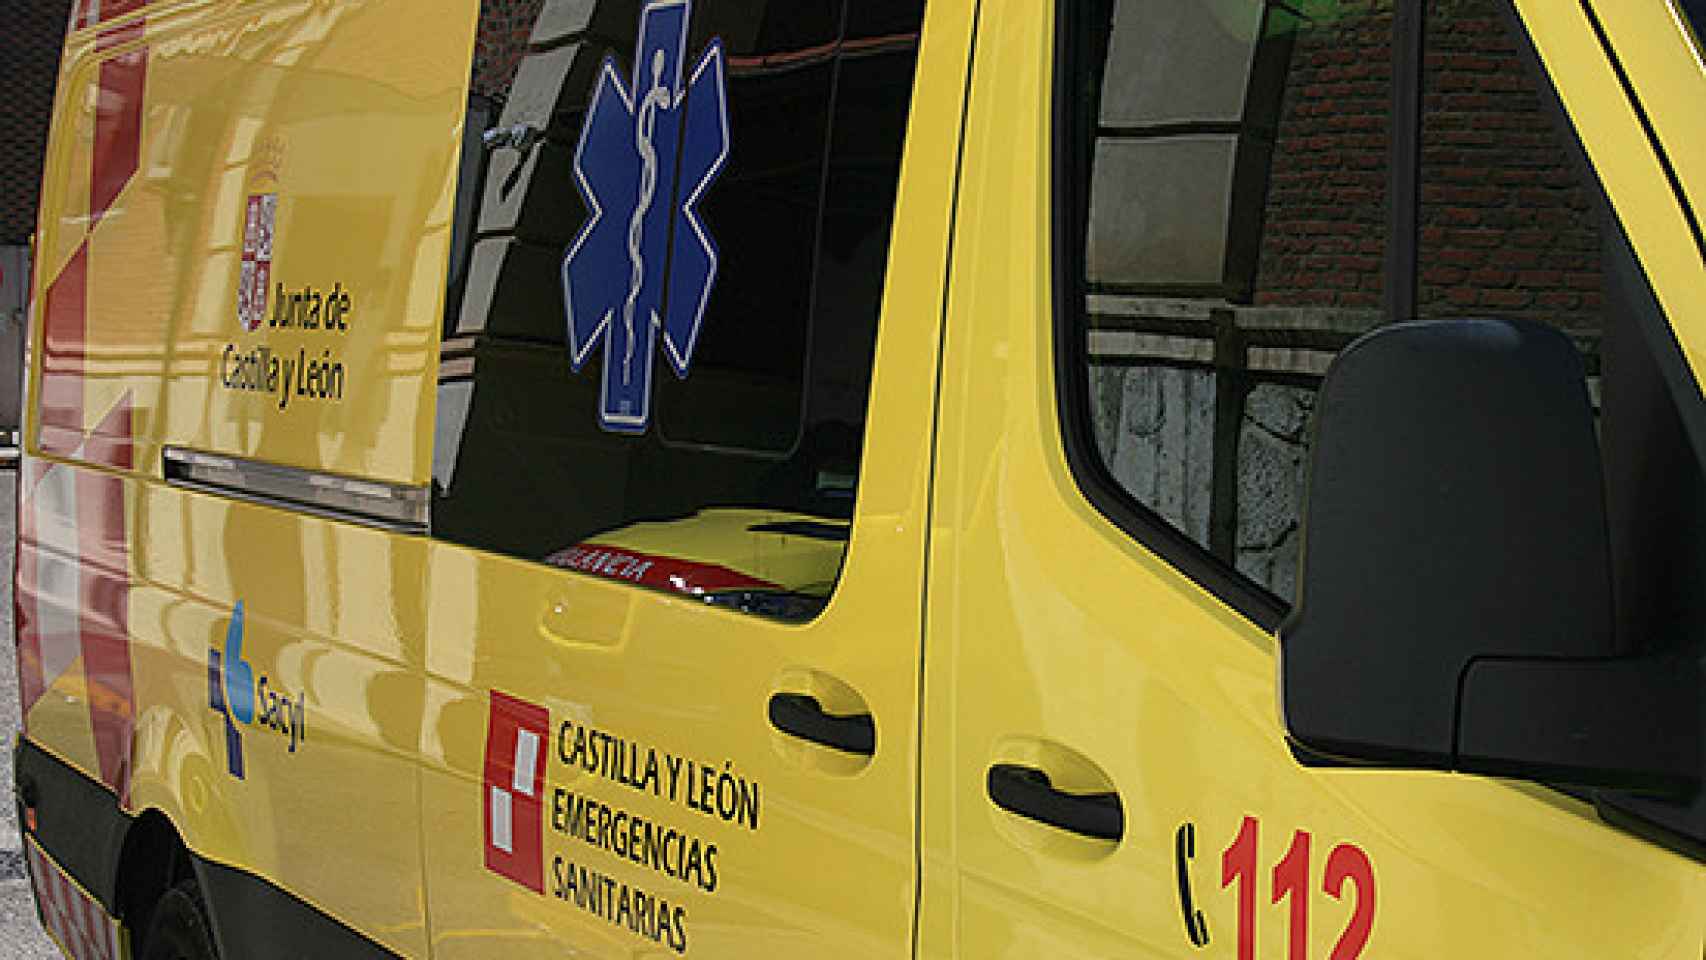 Imagen de una ambulancia medicalizada de Sacyl